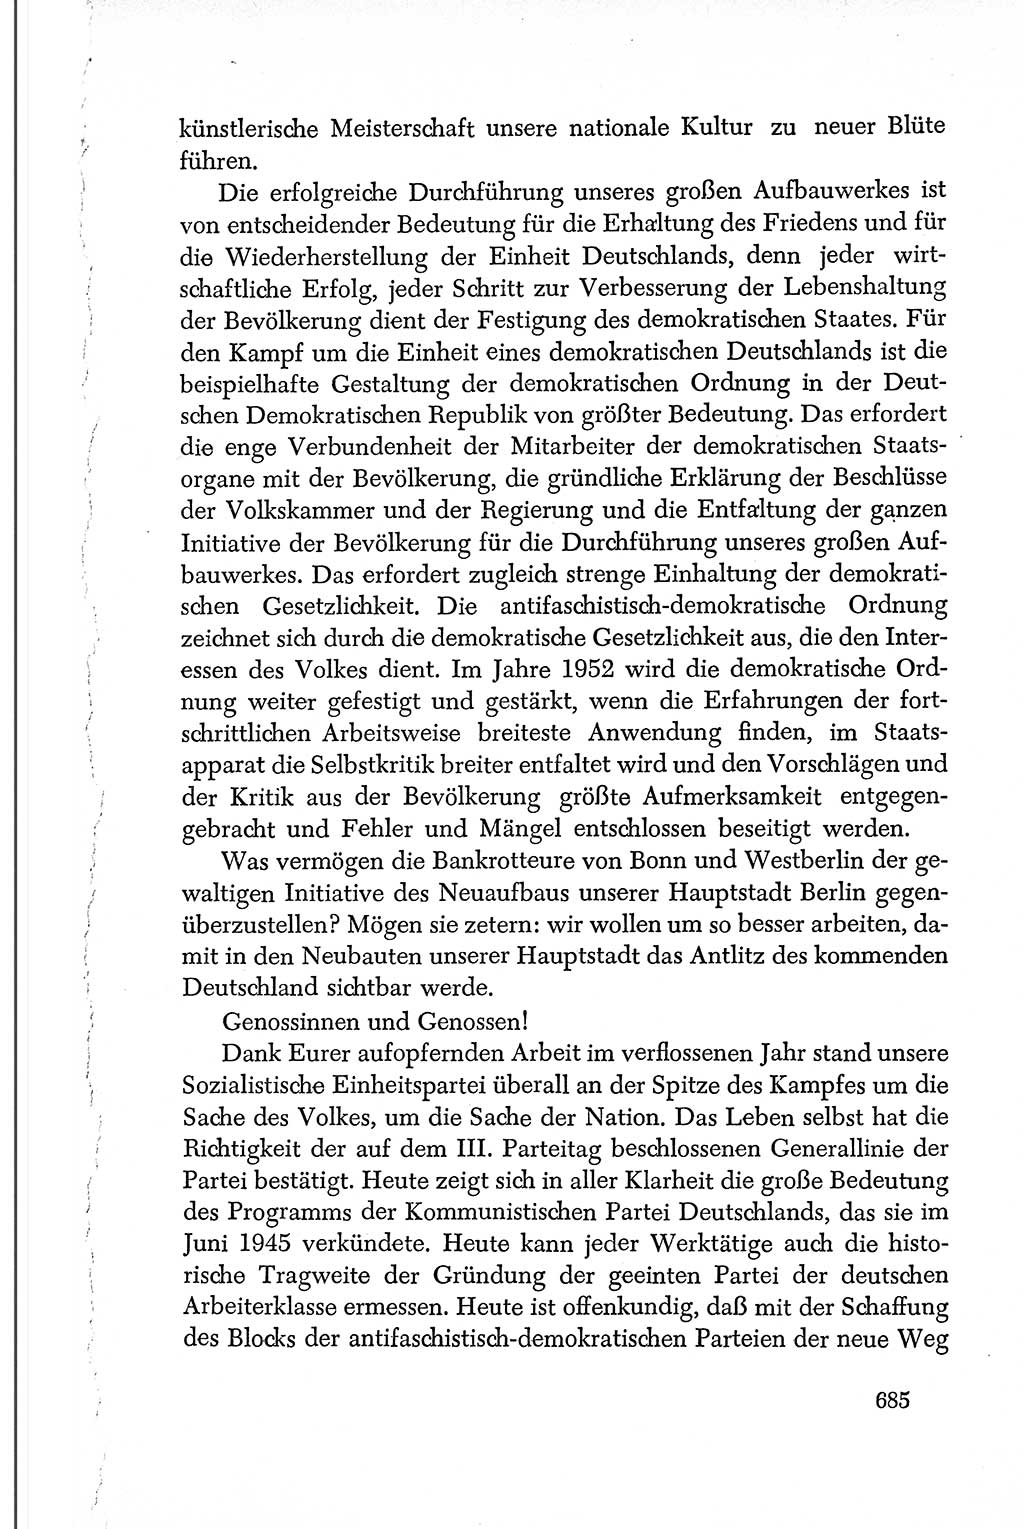 Dokumente der Sozialistischen Einheitspartei Deutschlands (SED) [Deutsche Demokratische Republik (DDR)] 1950-1952, Seite 685 (Dok. SED DDR 1950-1952, S. 685)